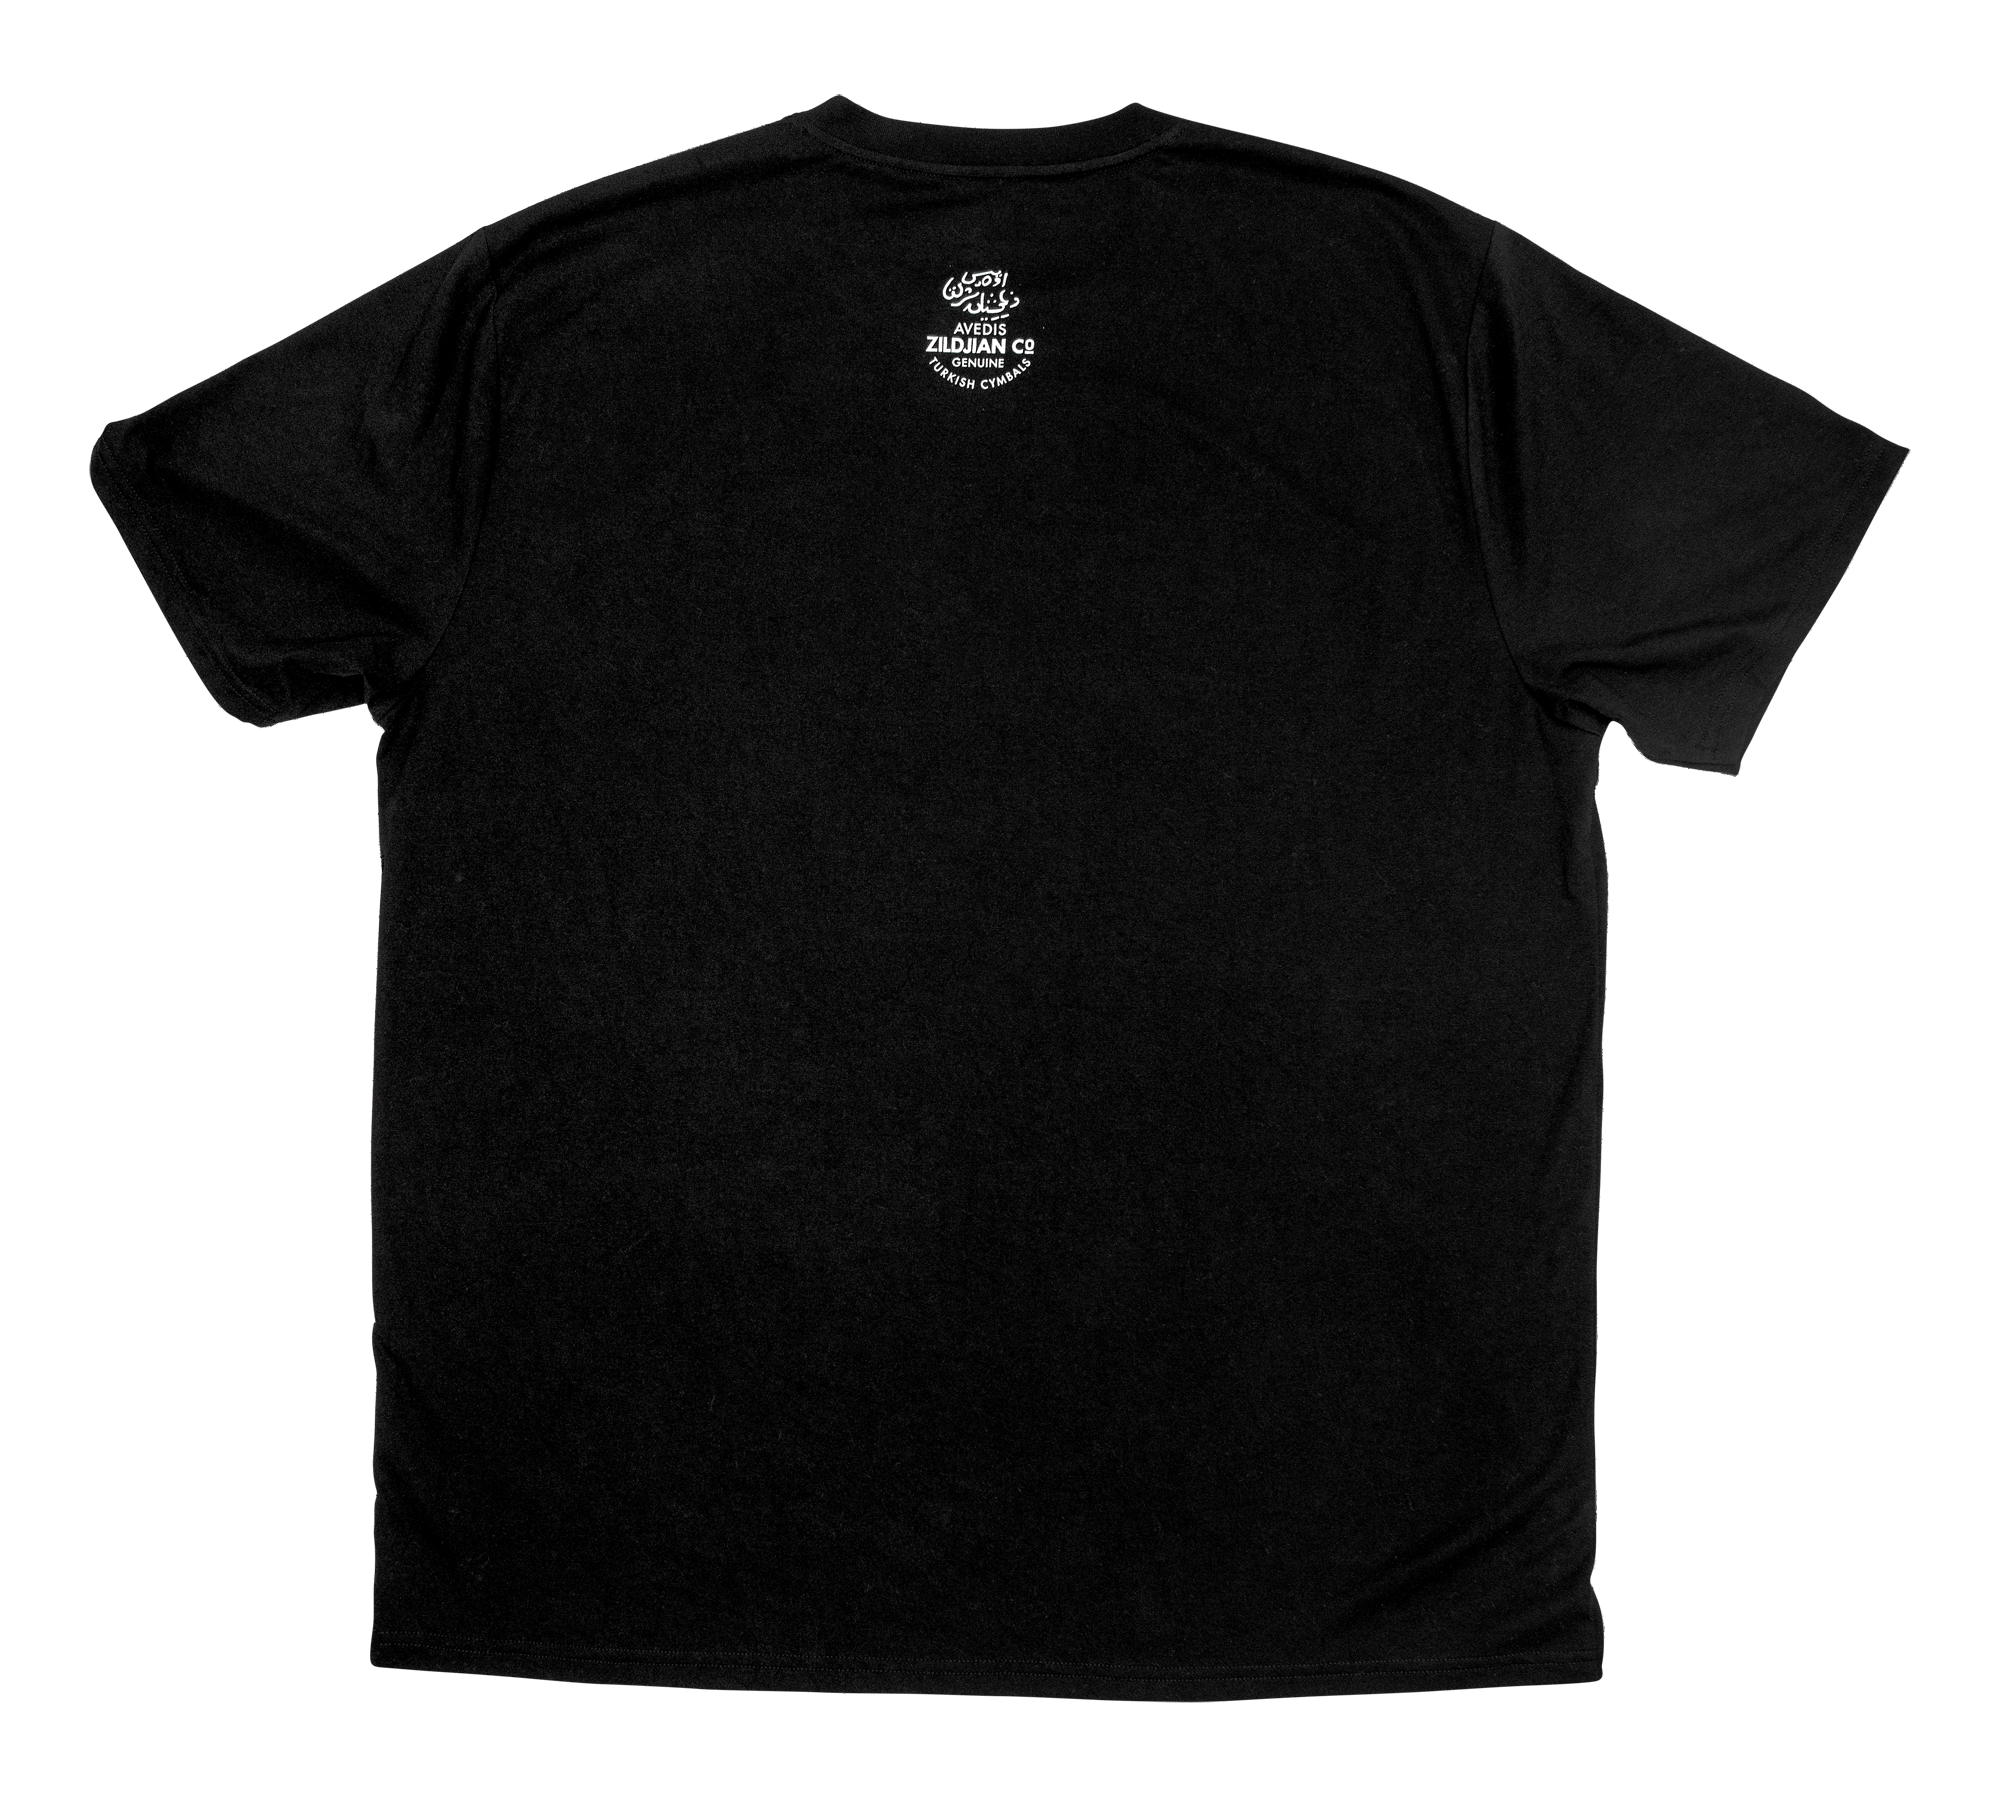 Zildjian ZIT3014 T-Shirt, Classic Logo Tee, XXL, black